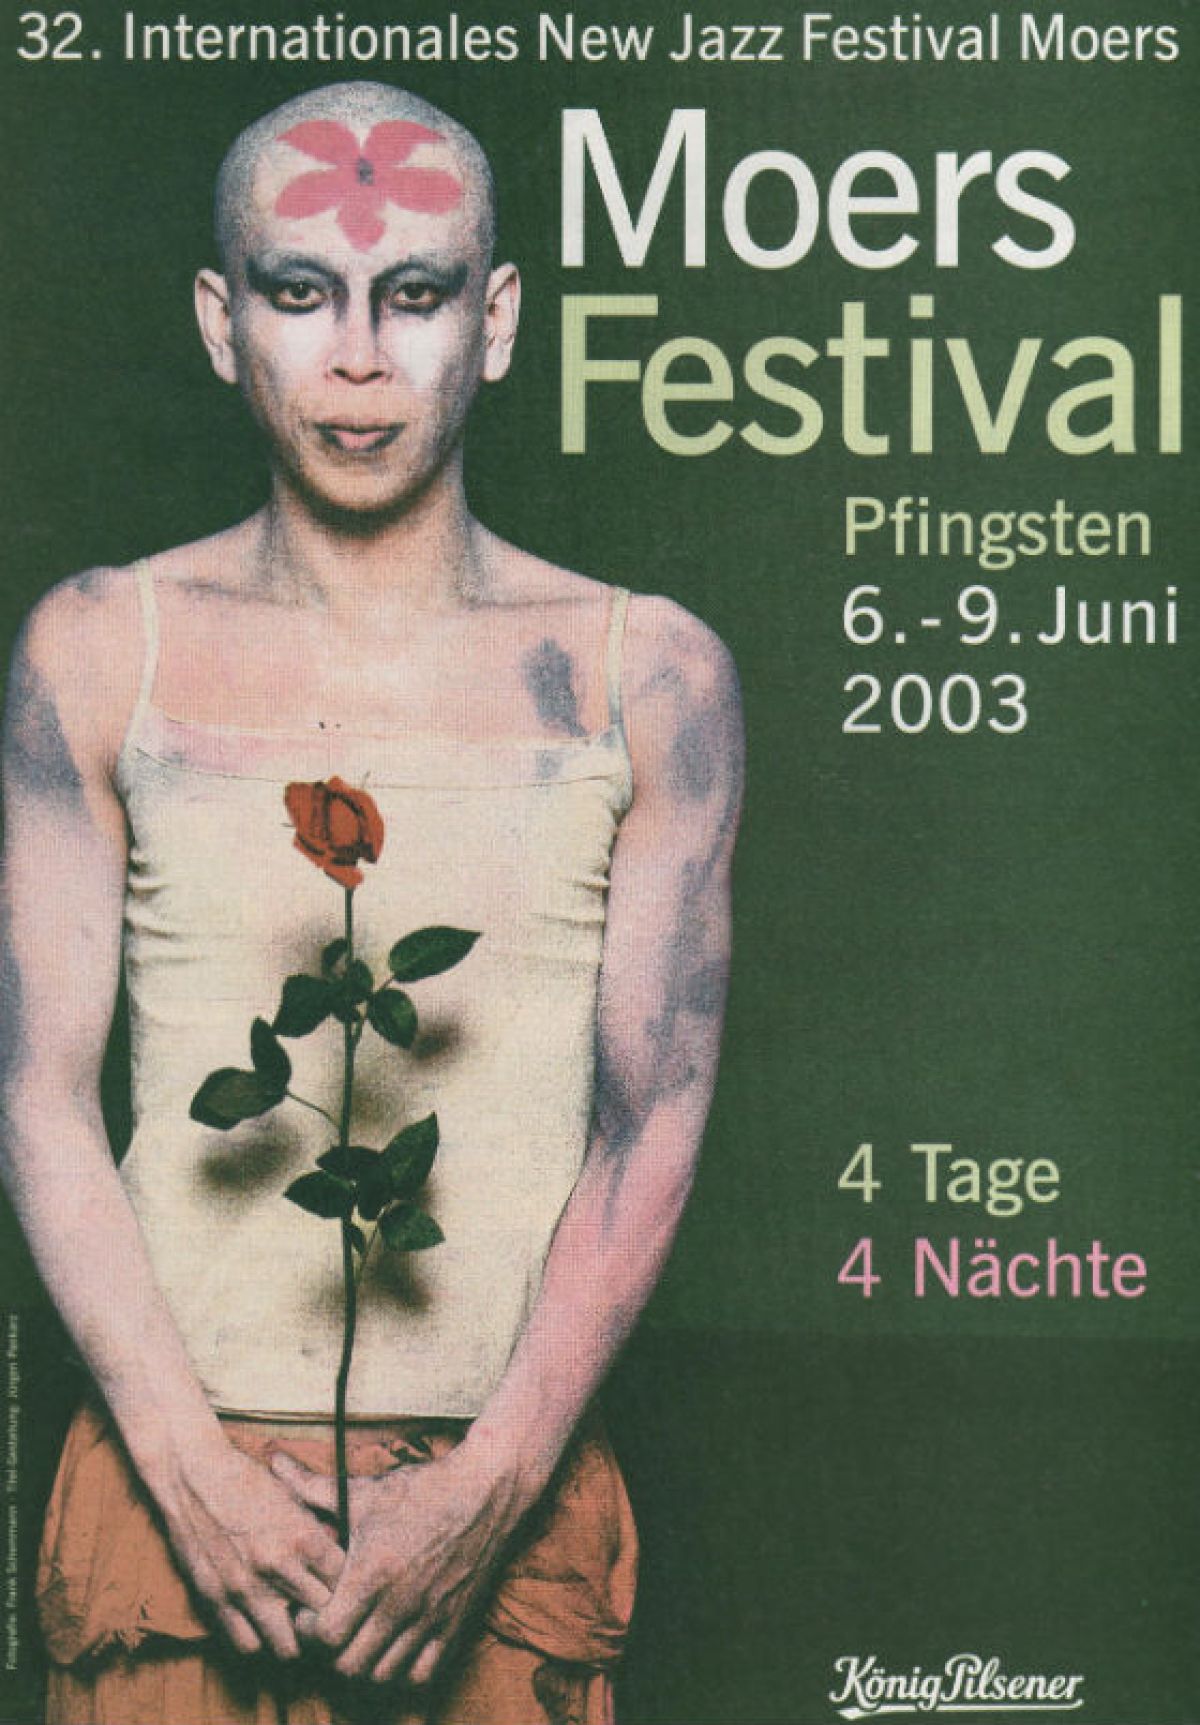 Festival-Plakat 2003